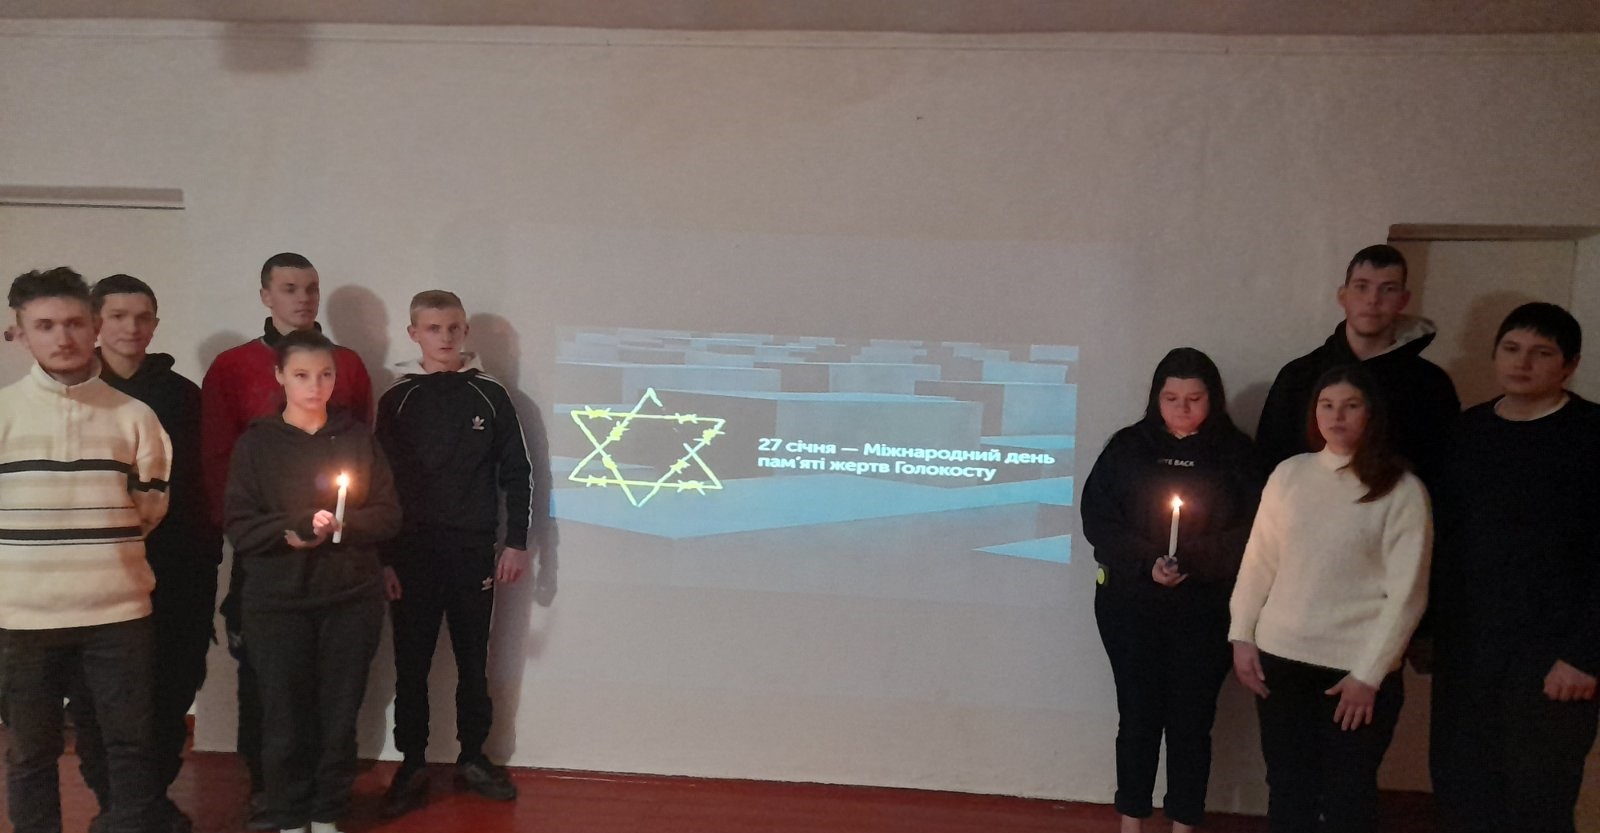 Міжнародний день пам`яті жертв Голокосту